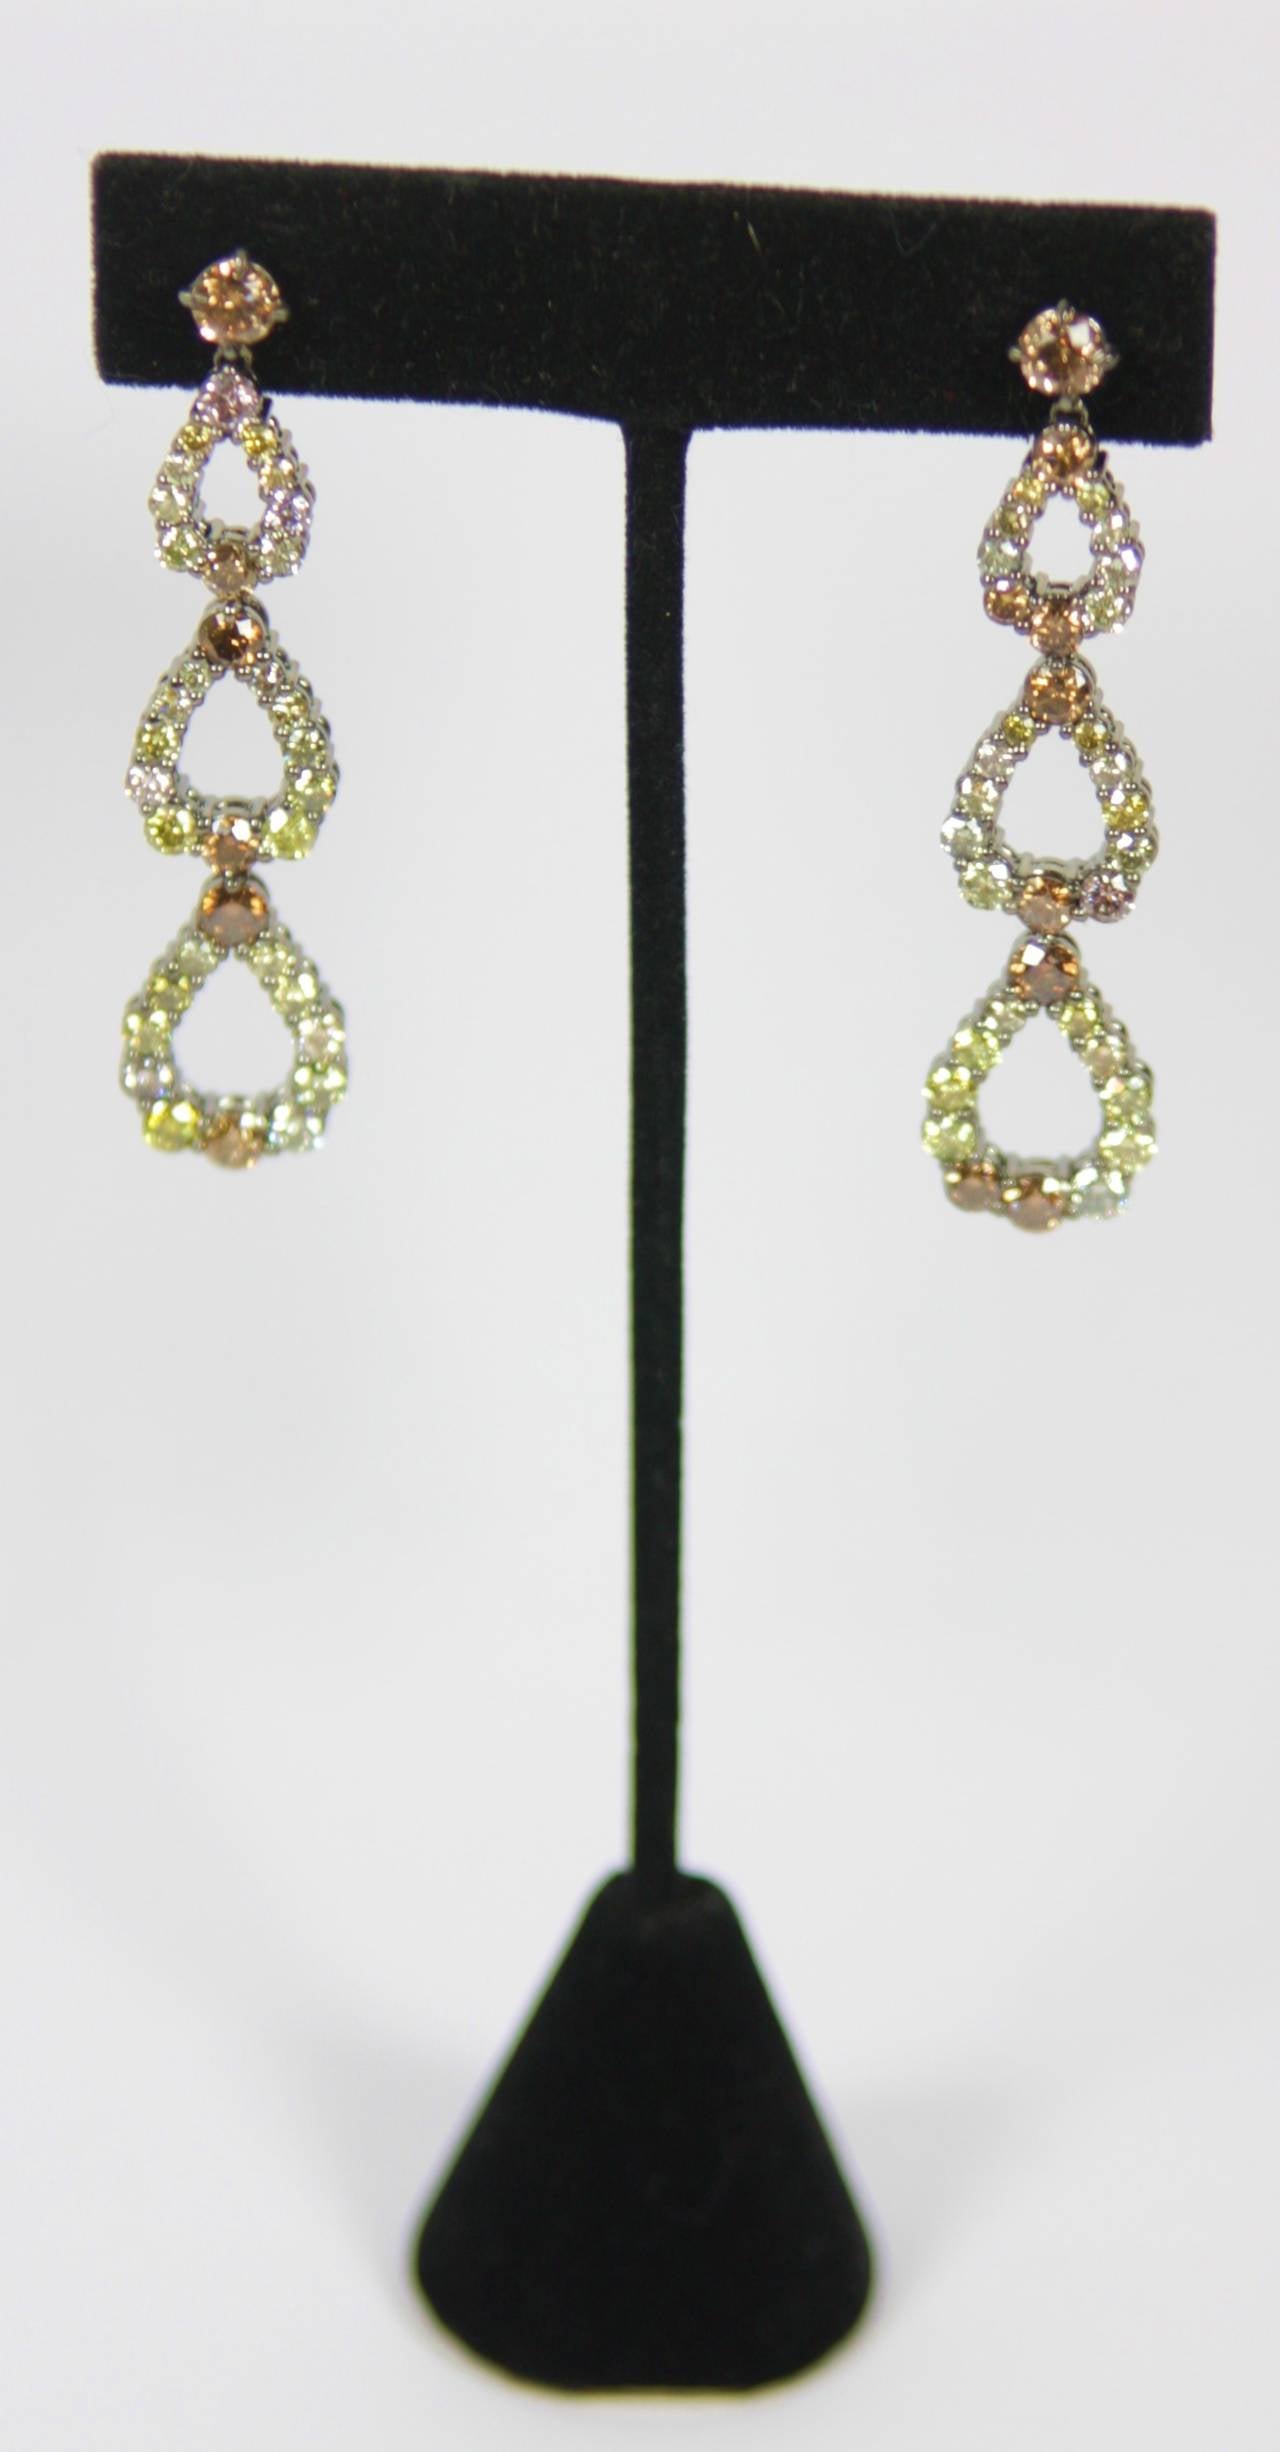 Die Ohrringe bestehen aus  ca. 7,50 Karat ausgefallener Diamanten im Rundschliff in verschiedenen Farben. Das 18-karätige Gold hat einen zusätzlichen Kontrast aus schwarzem Rhodium. Ein absolut wundervolles Paar Ohrringe in